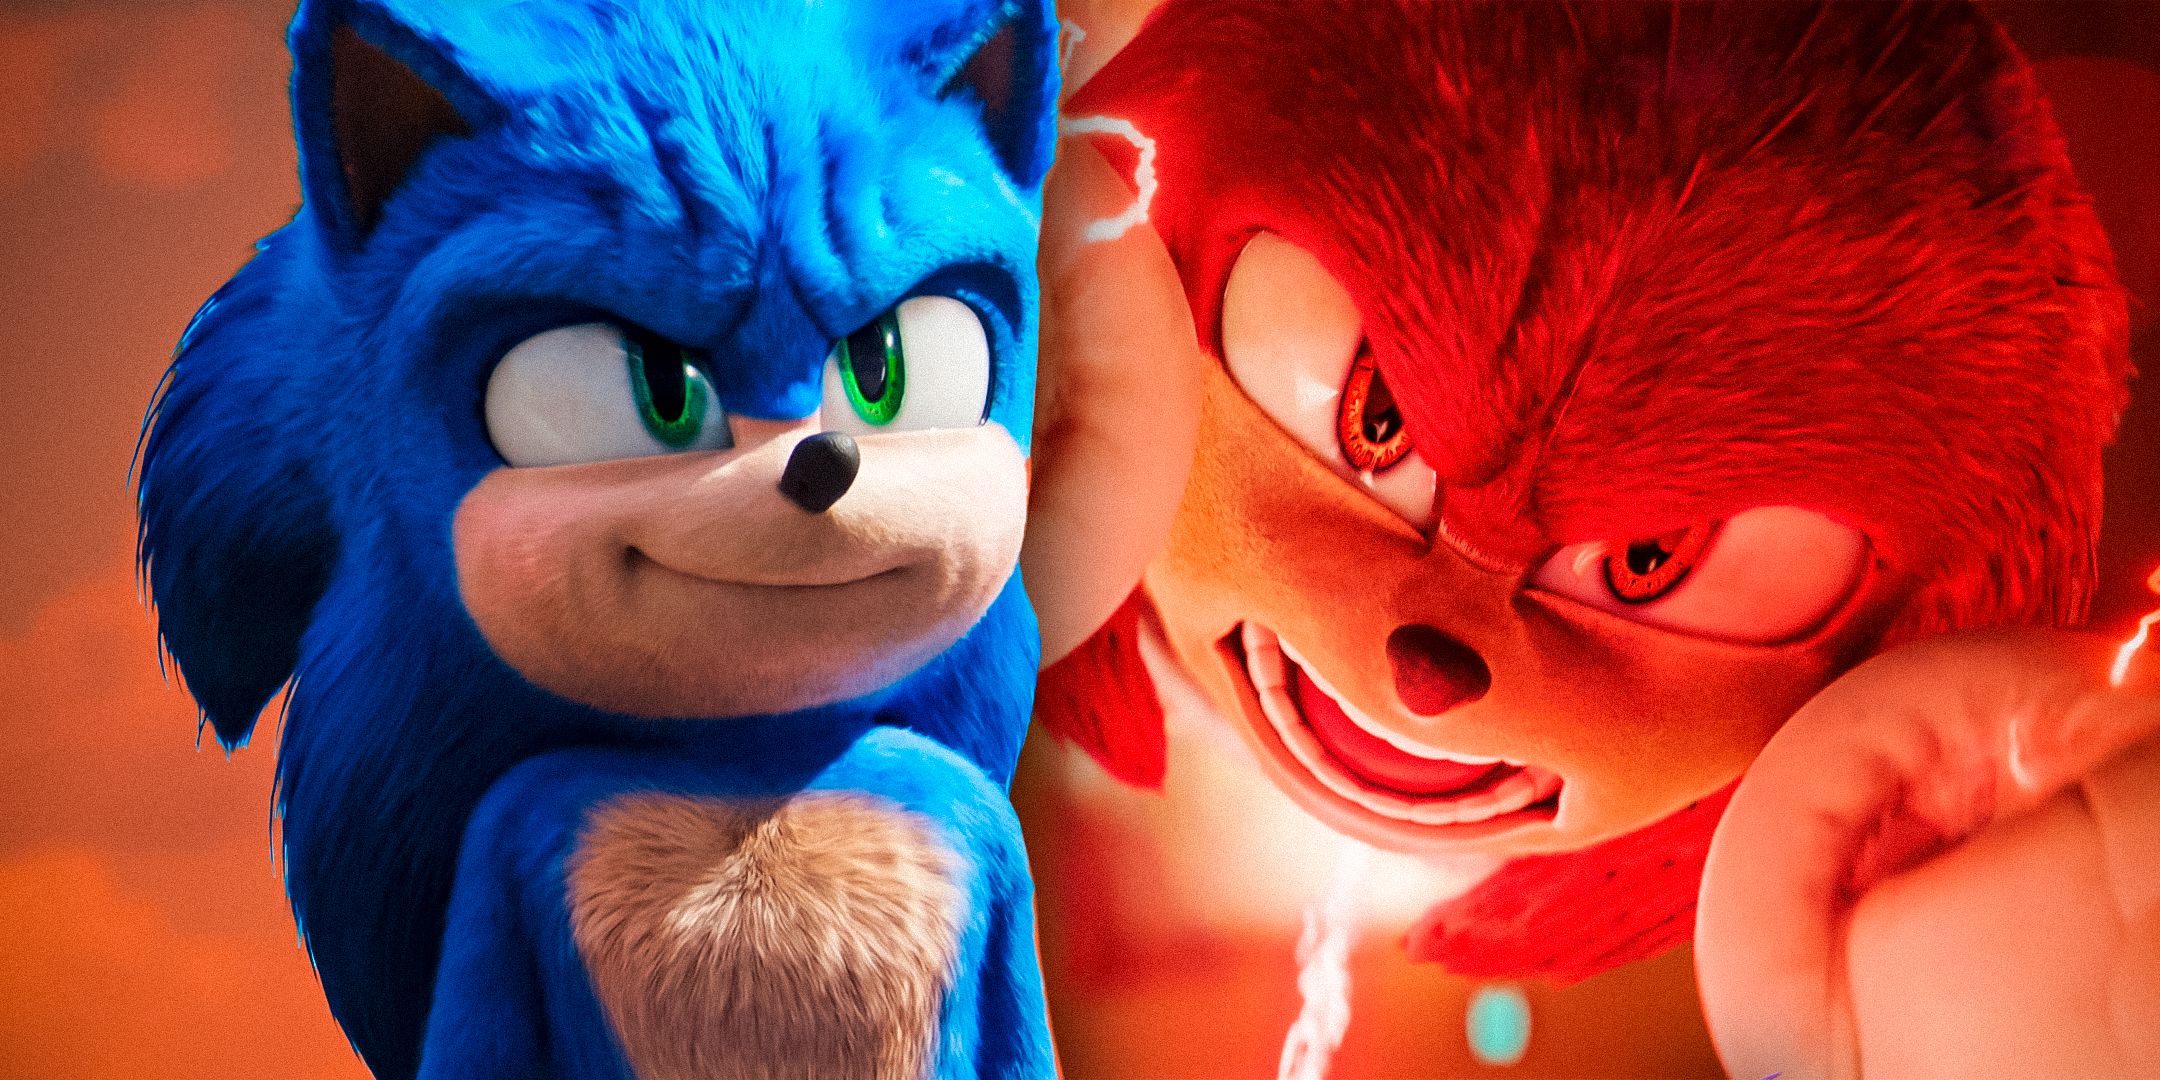 La mayor crítica de Knuckles explica perfectamente el éxito de taquilla de 723 millones de dólares de las películas de Sonic The Hedgehog